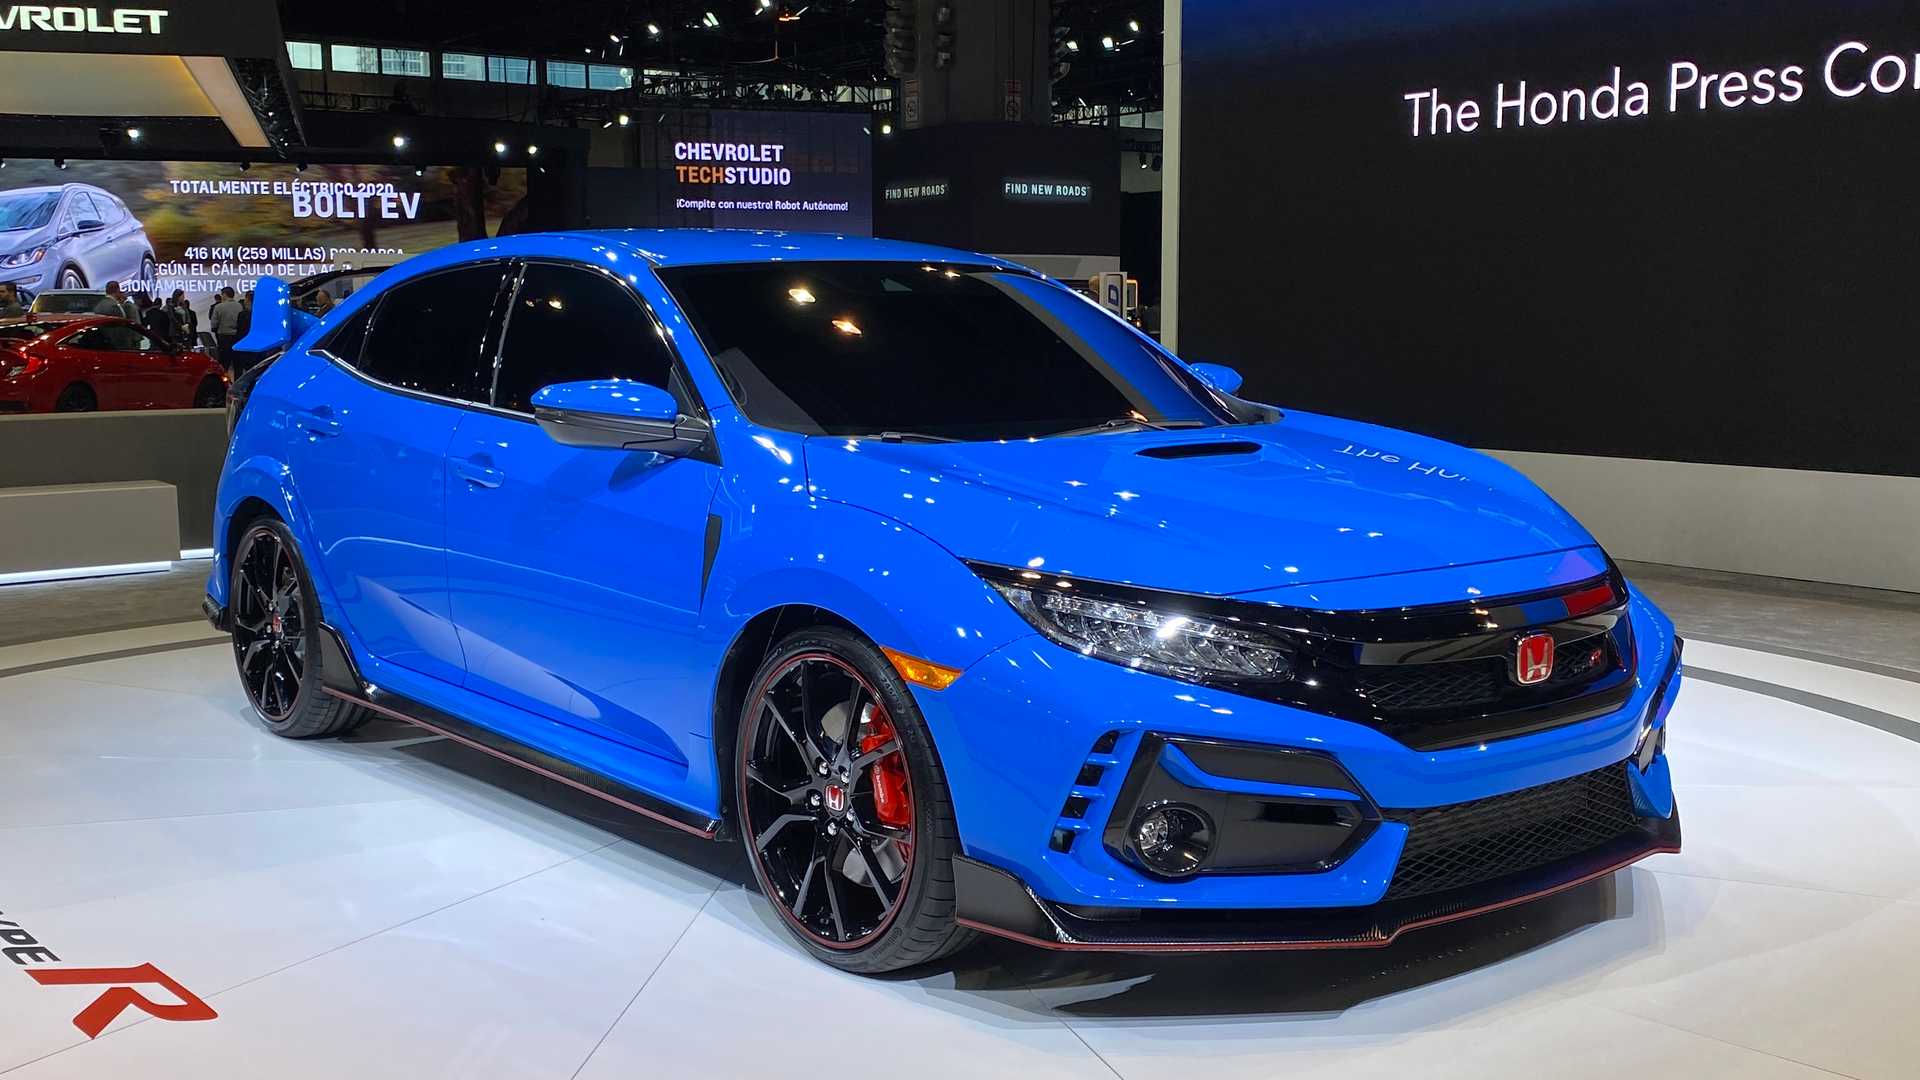 ภาพคันจริง Honda Civic Type R รุ่นปรับปรุง ตัวถัง สีน้ำเงินเข้ม “Brilliant Sporty Blue”